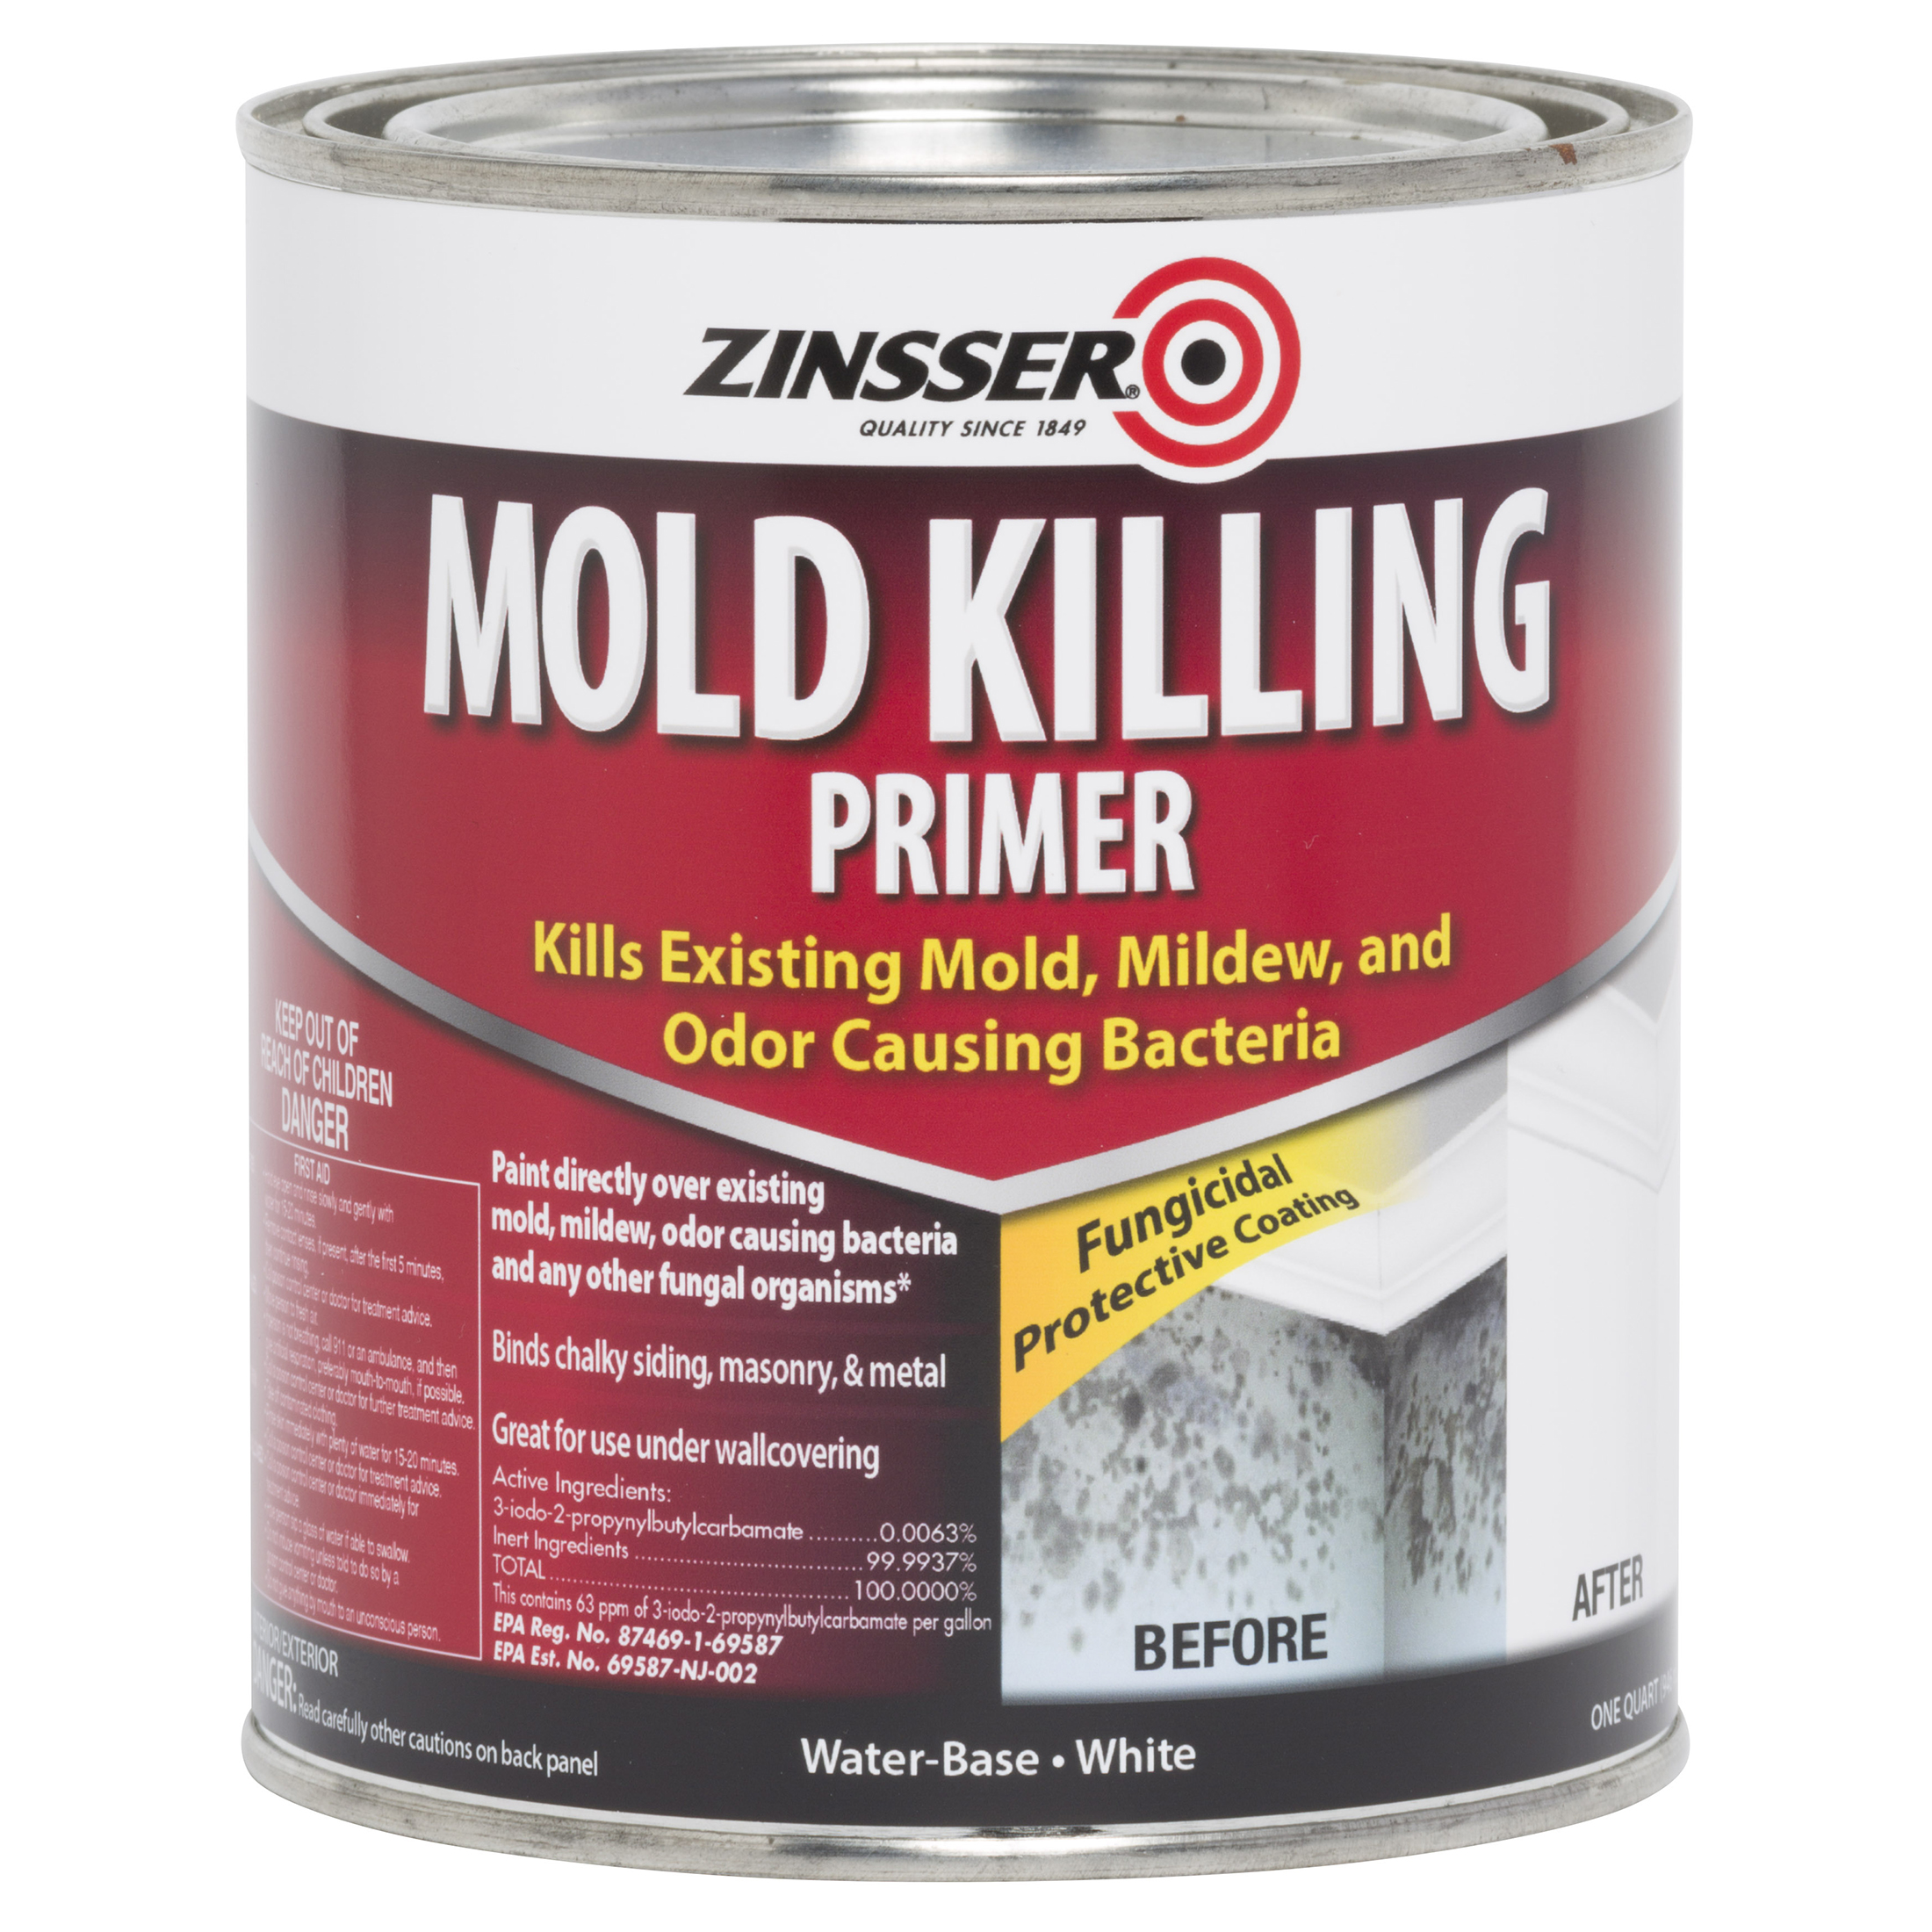 White, Zinsser Mold Killing Primer-316097, Quart - image 2 of 10